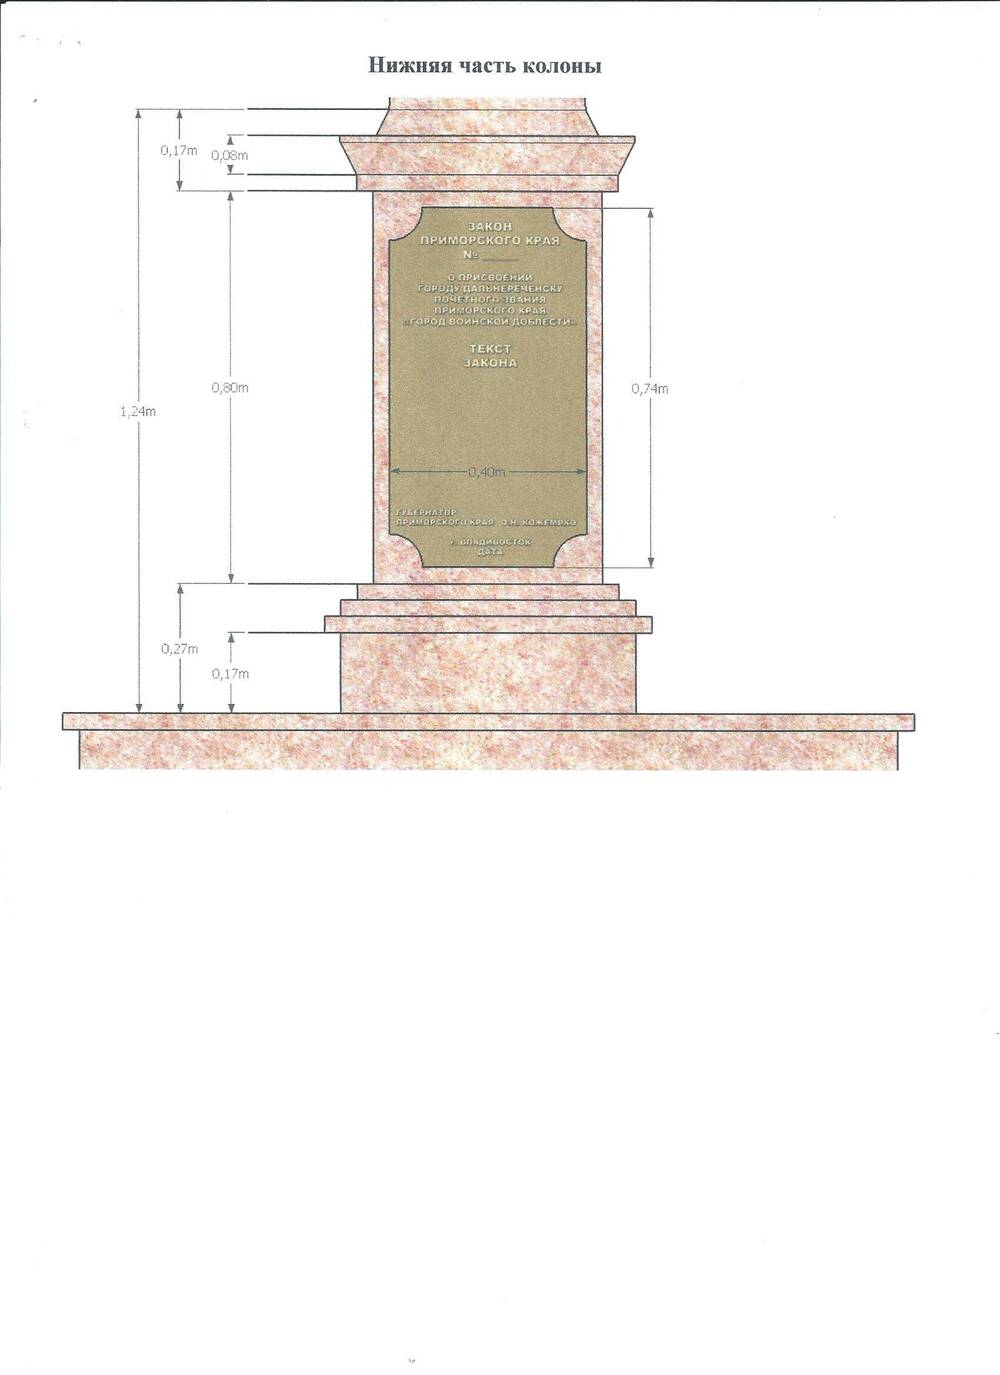 Эскизный проект памятного знака «Город воинской доблести» (нижняя часть колоны), г. Дальнереченск